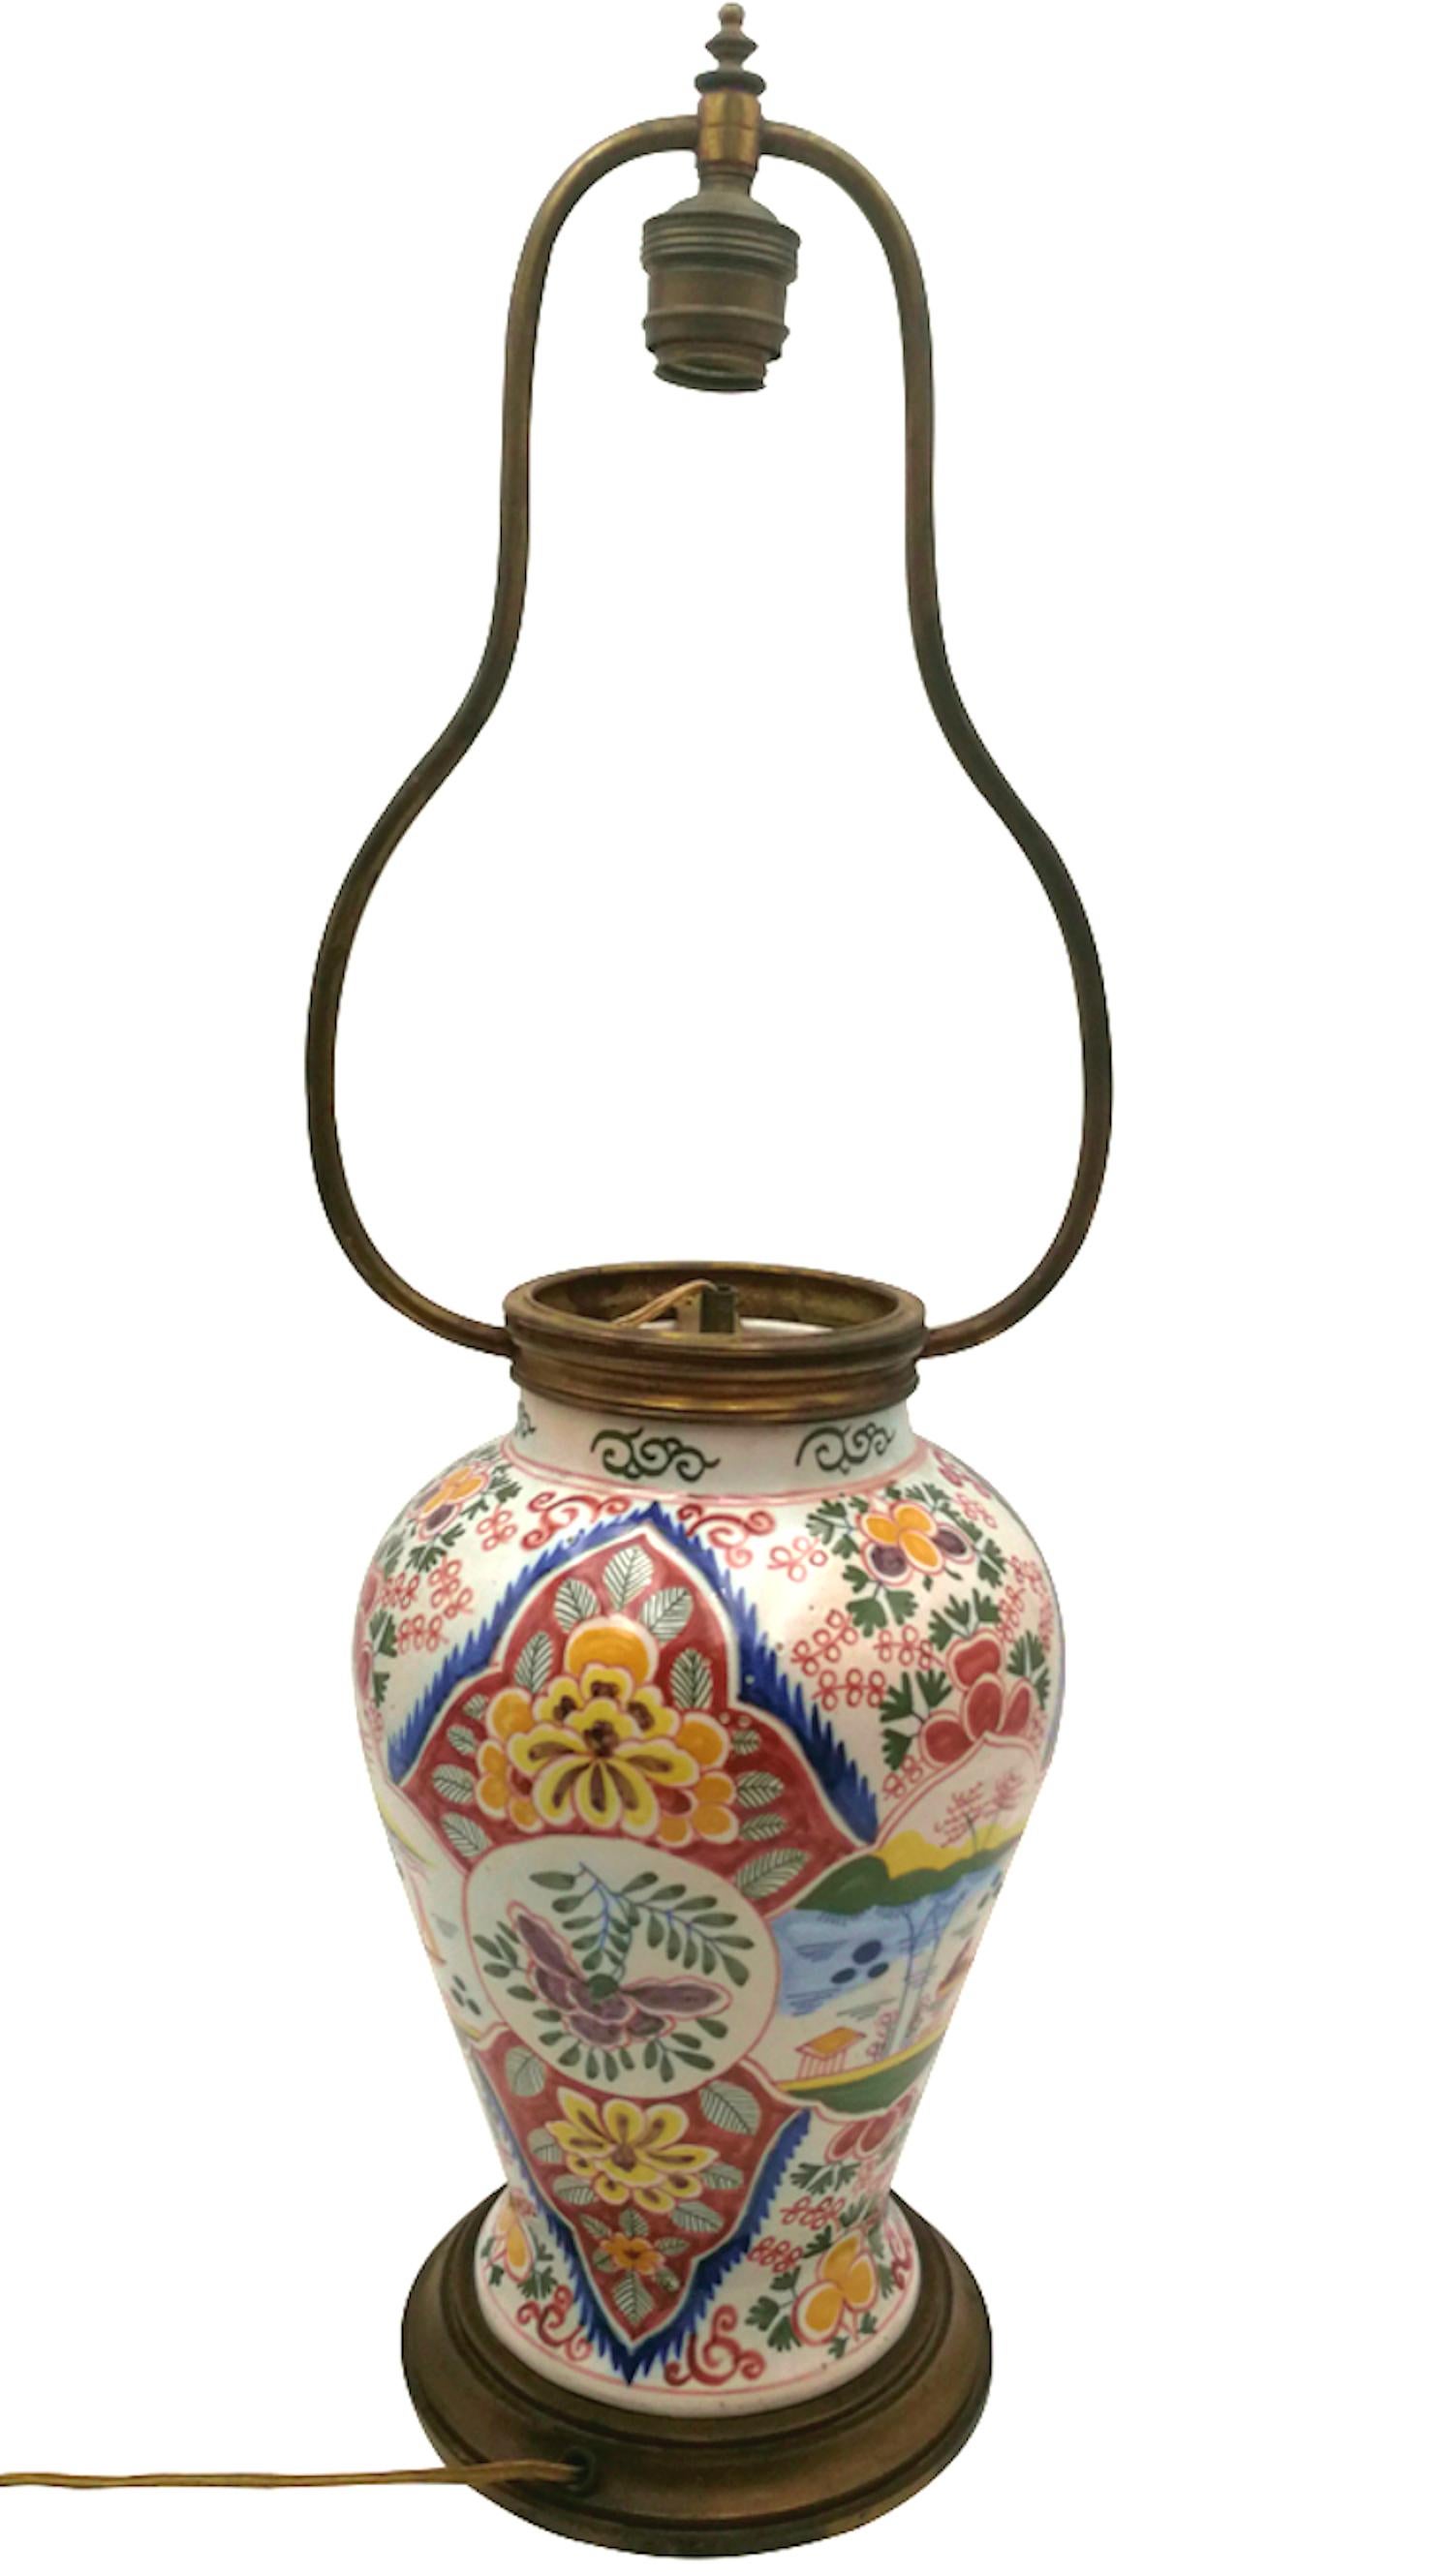 Lampe de table montée sur un vase de Delft du début du 20e siècle, peint à la main et décoré de motifs chinois.
des motifs floraux inspirés et un personnage dans une barque. La large palette de couleurs est inhabituelle pour ce type de